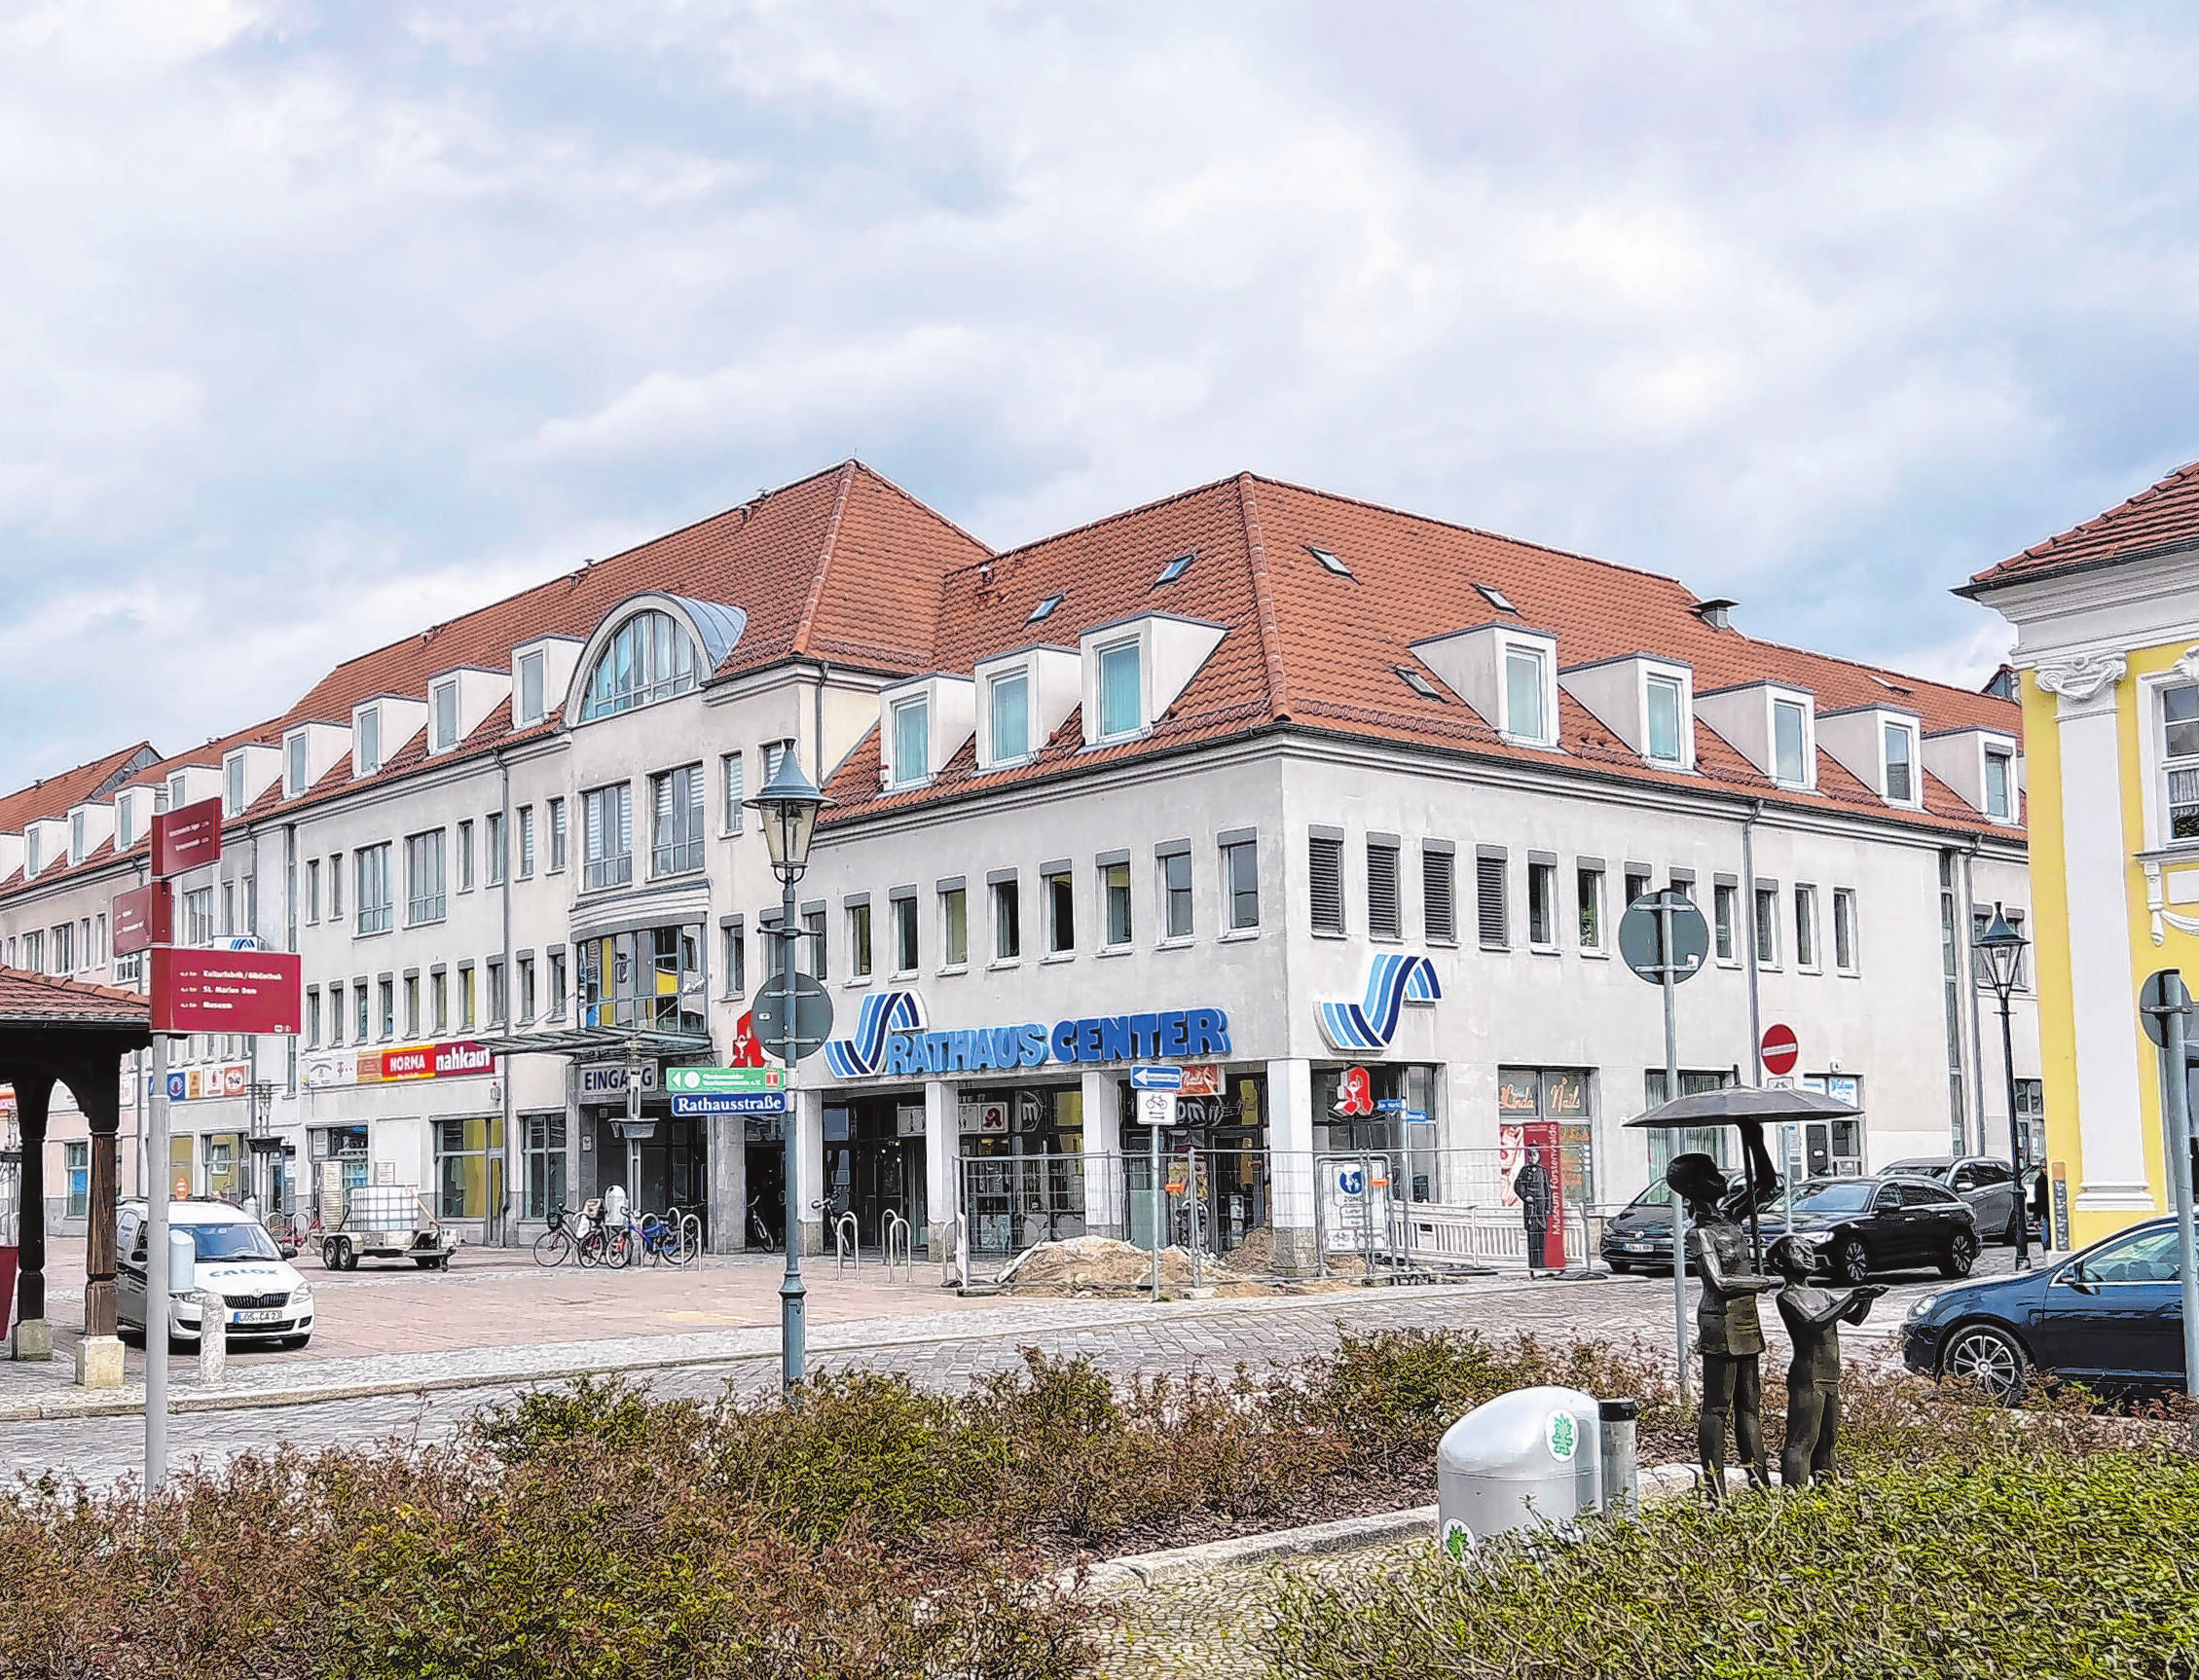 Das RathausCenter - zentral gelegen direkt am Marktplatz von Fürstenwalde - bietet vielfältige Einkaufsmöglichkeiten.